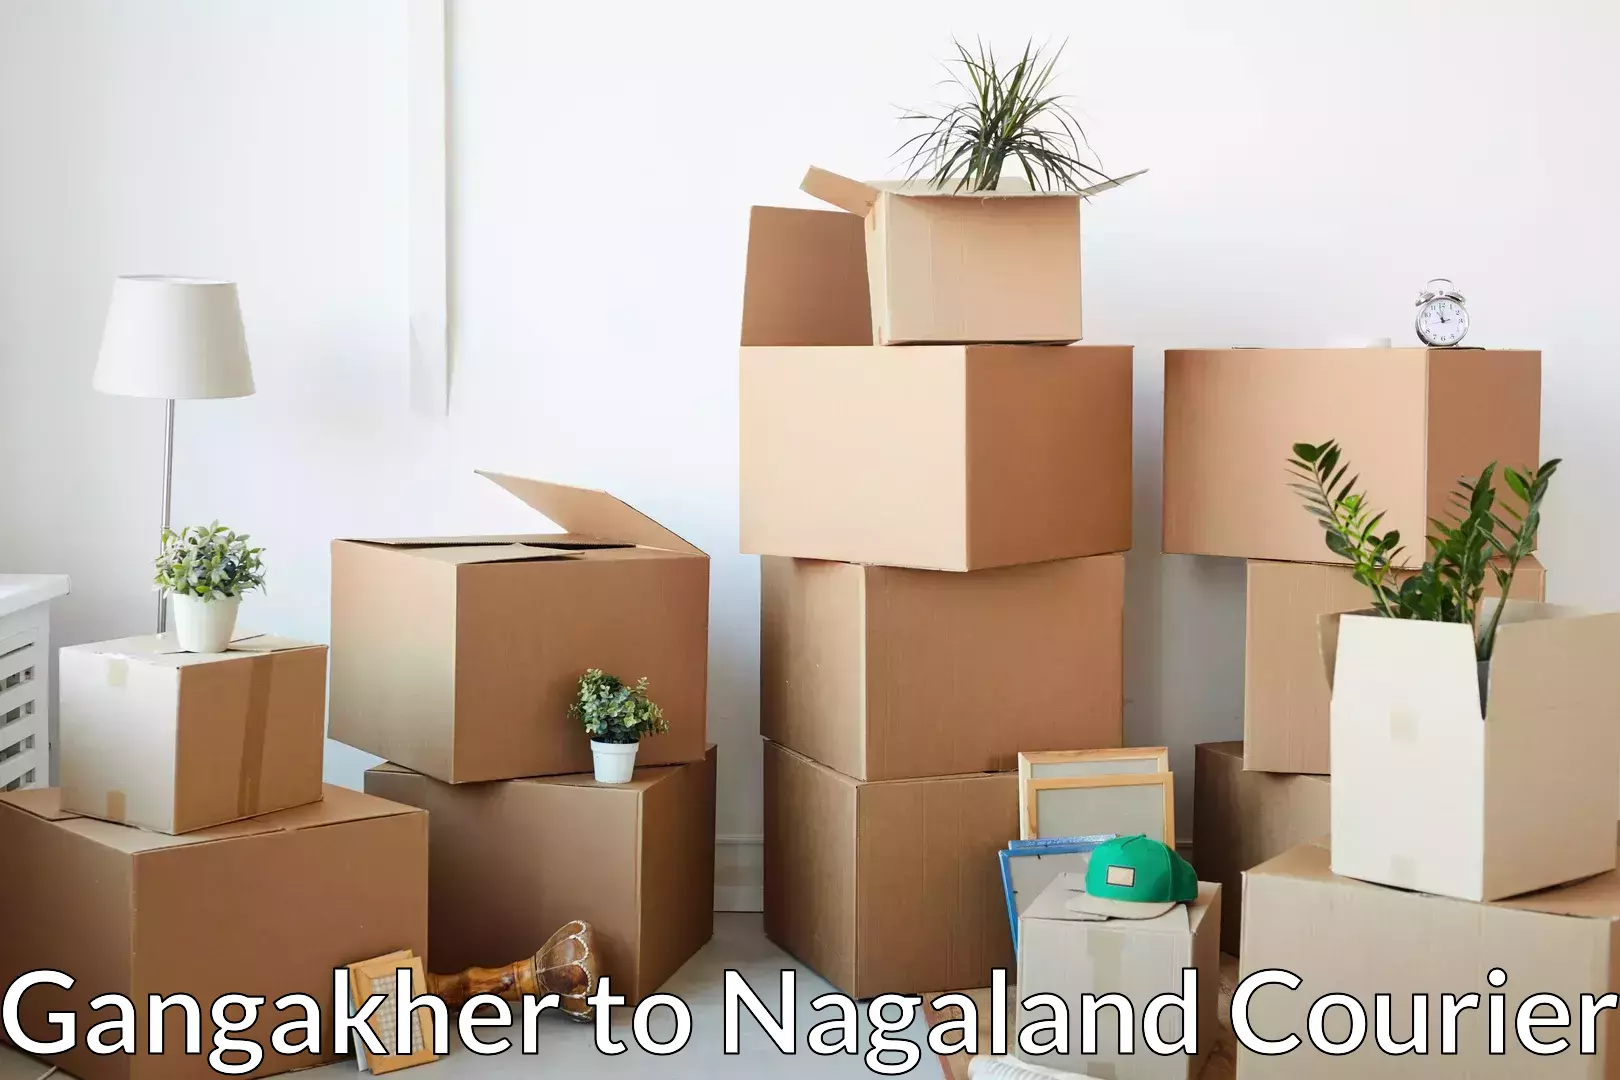 Household moving experts Gangakher to Nagaland